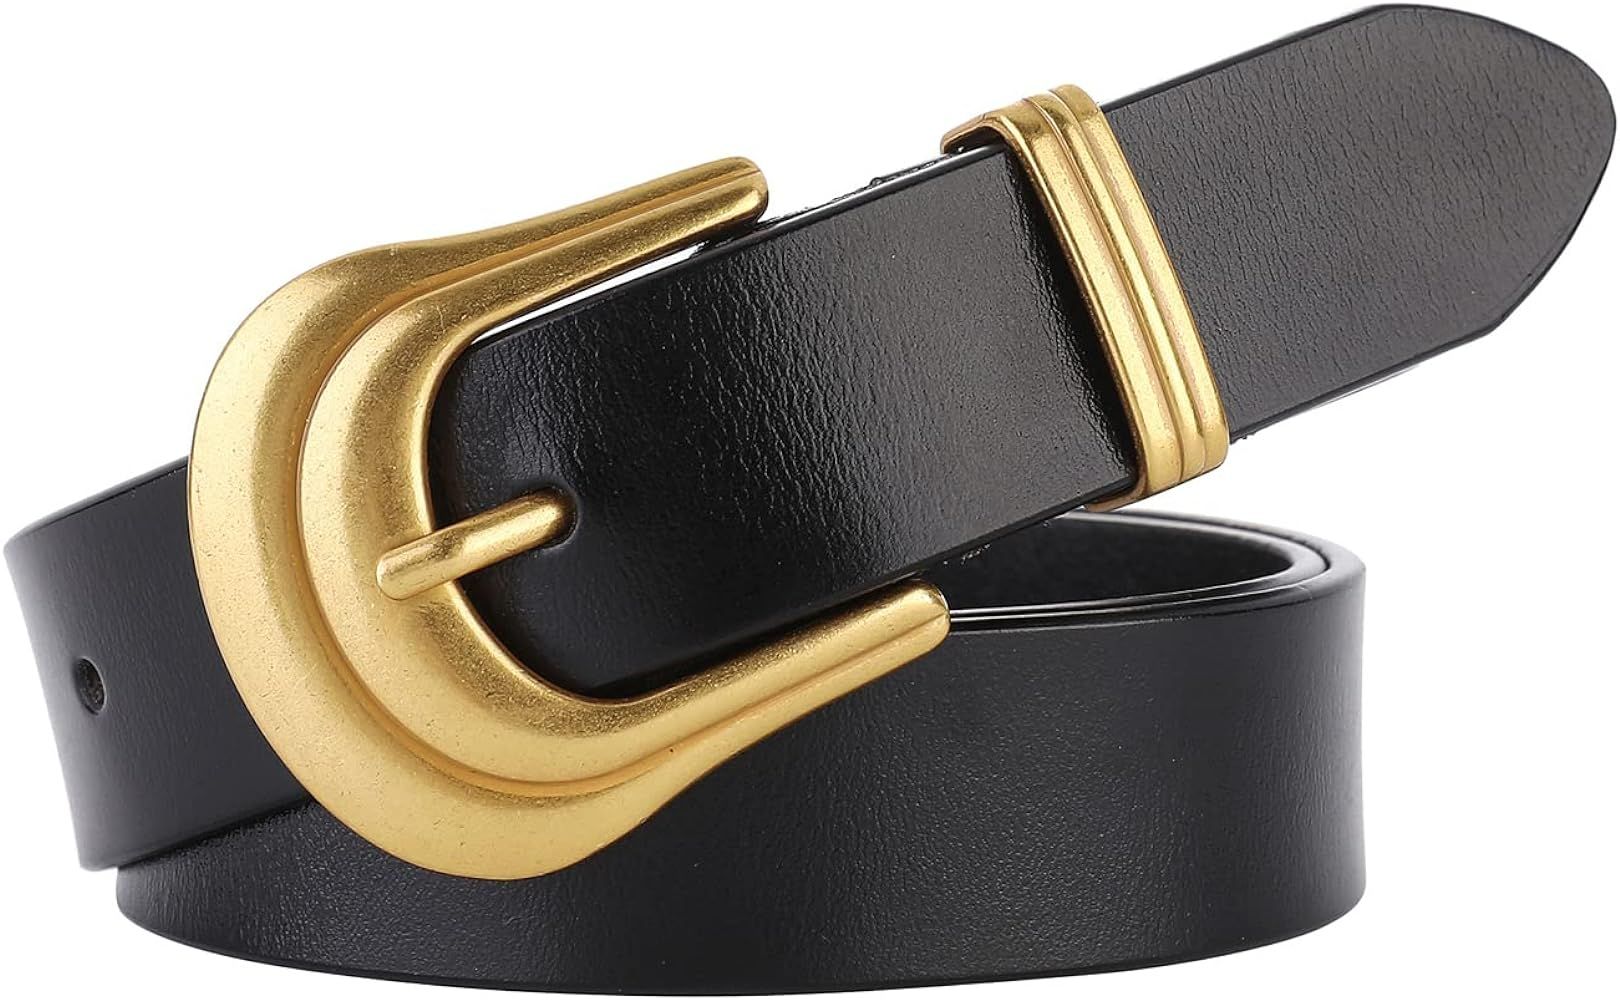 Women's Belt Western Belts Silver Gold Buckle Black Leather Belt Pants Jeans Belts for Women | Amazon (US)